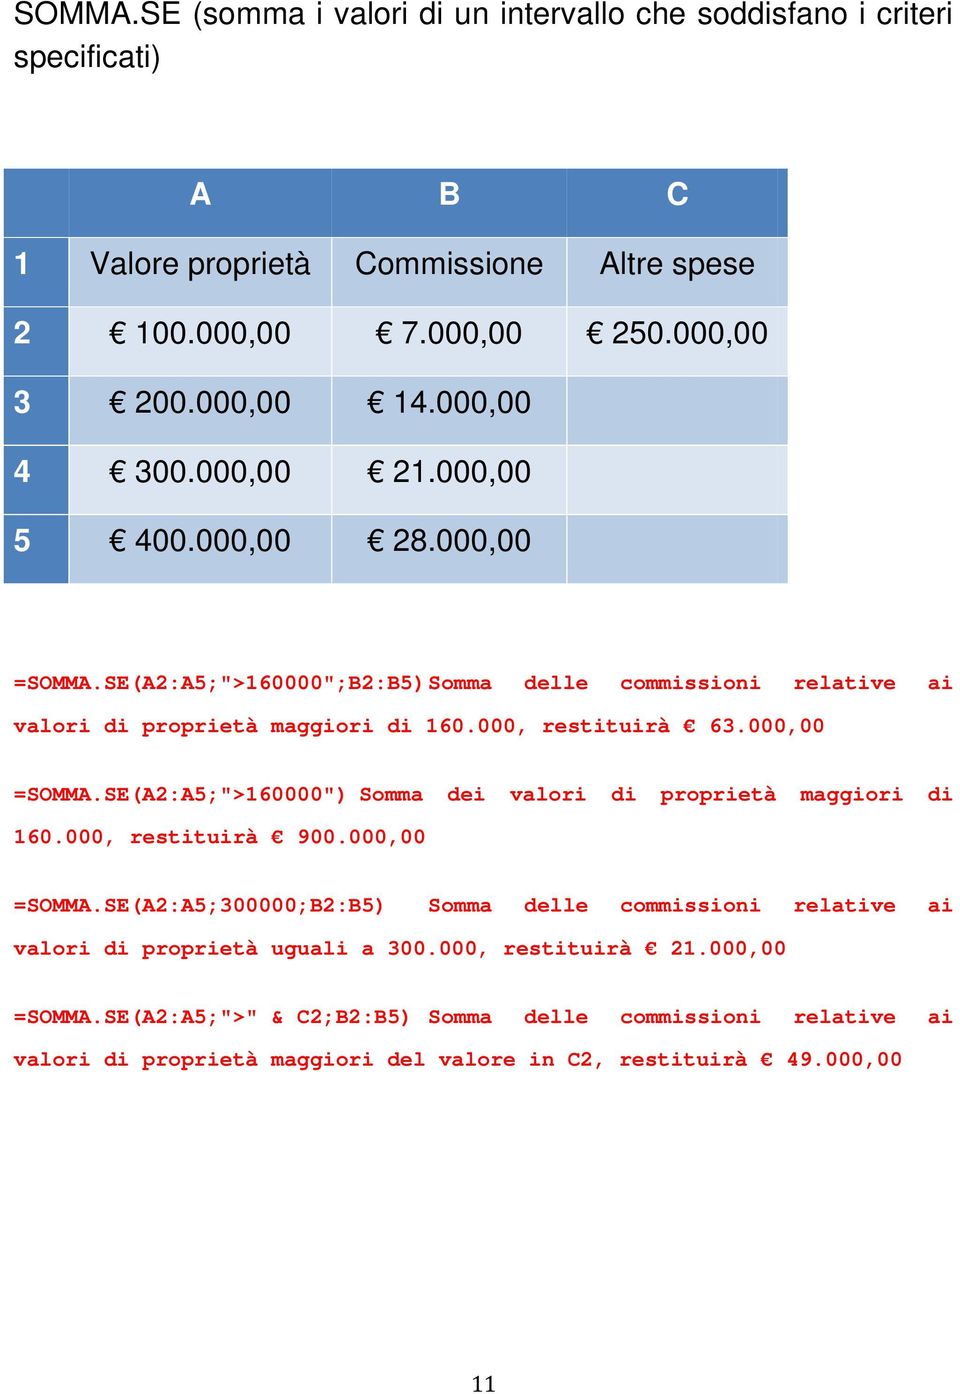 000,00 =SOMMA.SE(A2:A5;">160000") Somma dei valori di proprietà maggiori di 160.000, restituirà 900.000,00 =SOMMA.SE(A2:A5;300000;B2:B5) Somma delle commissioni relative ai valori di proprietà uguali a 300.